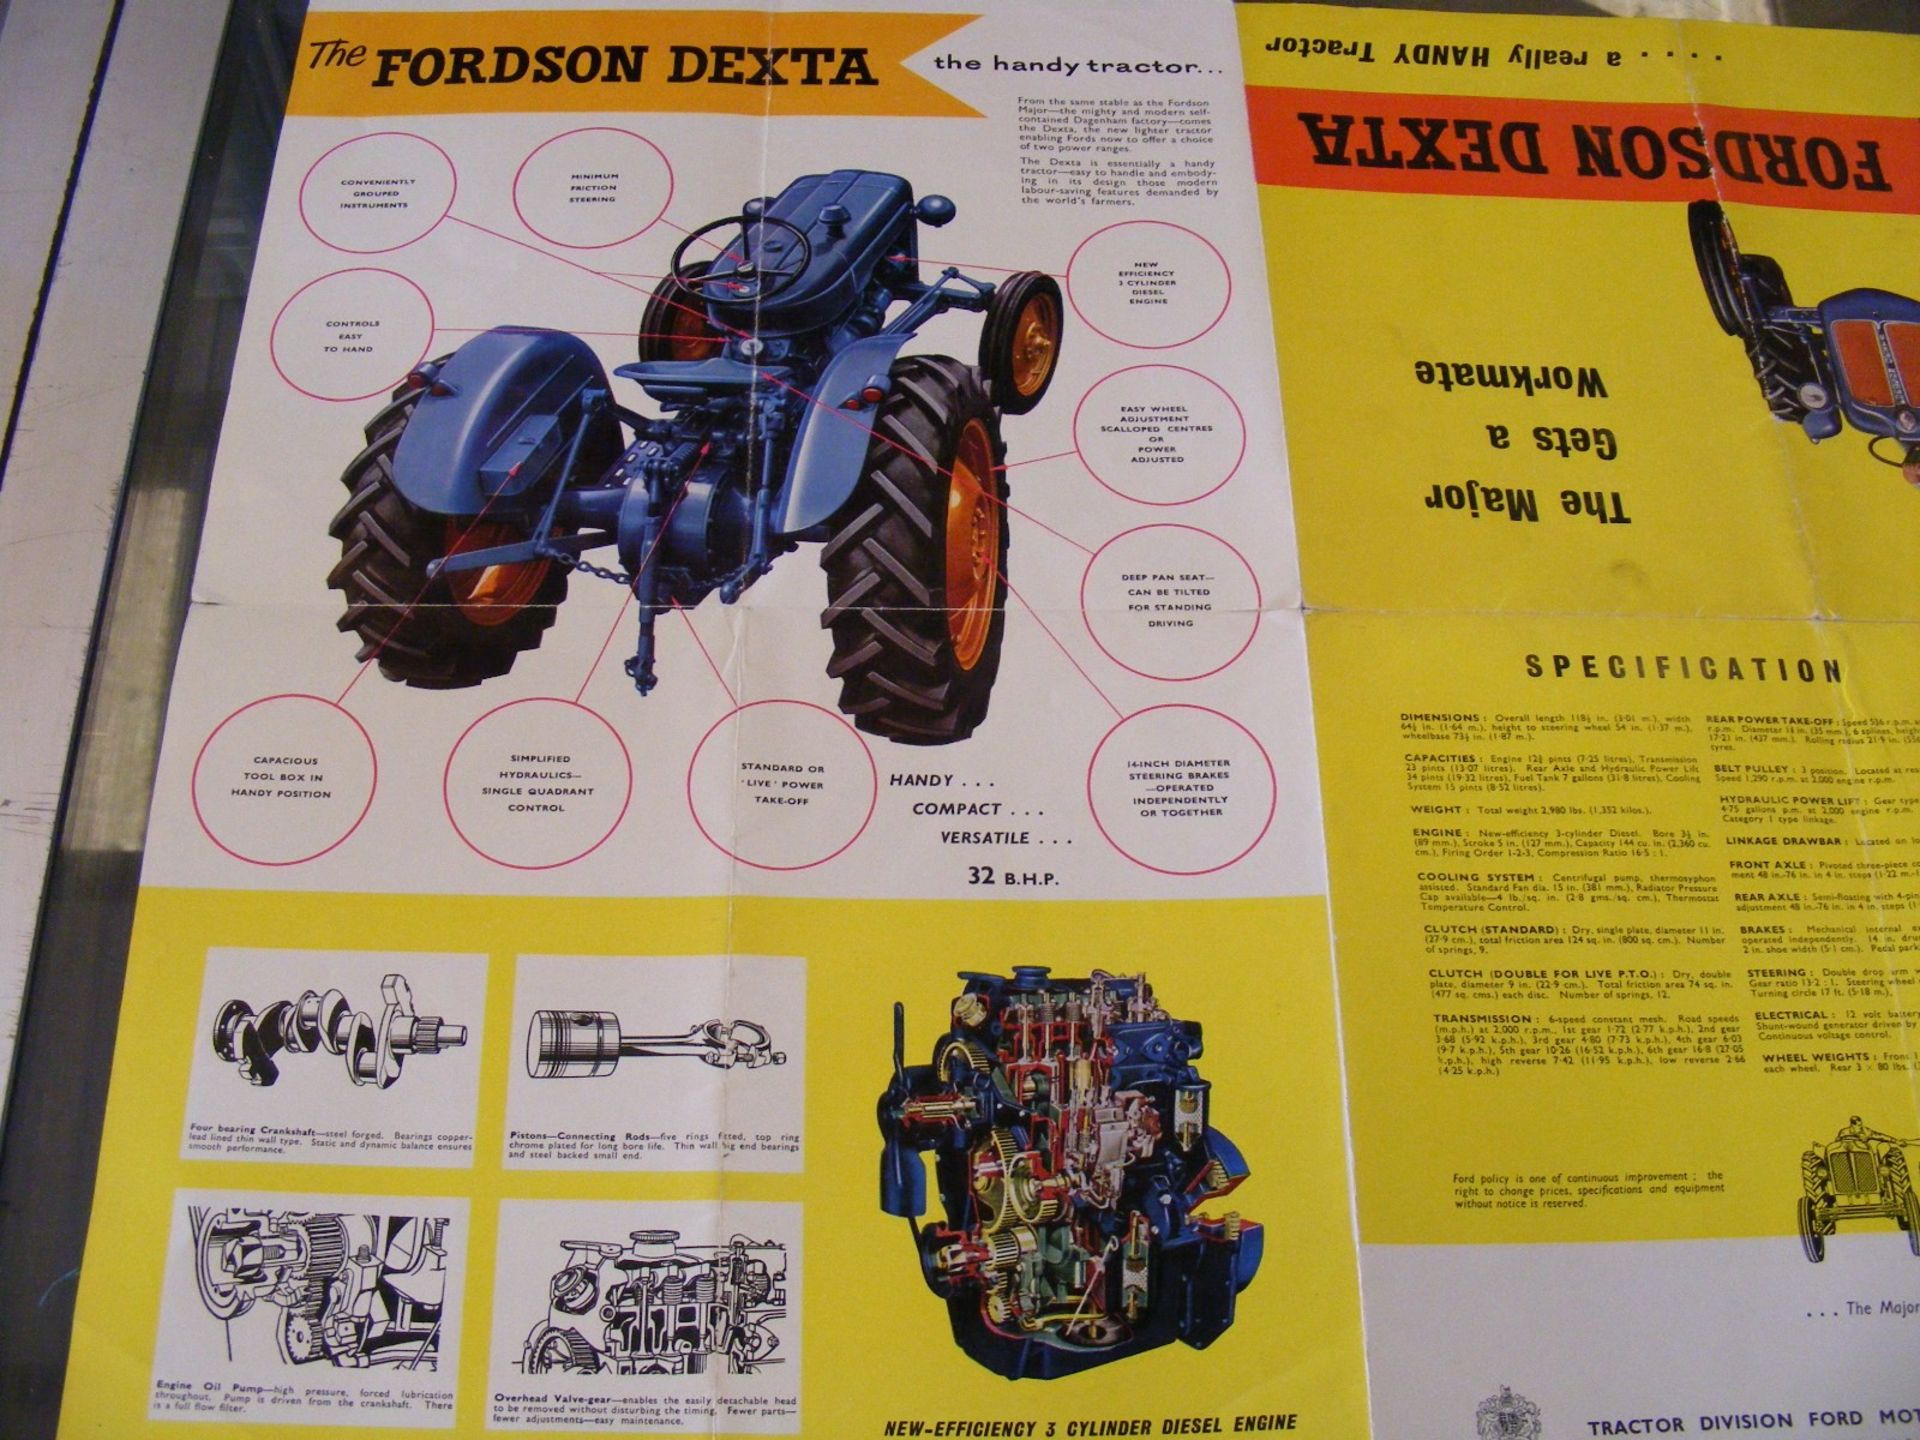 Fordson Dexta instruction book t/w New Fordson Dexta leaflet - Image 3 of 3